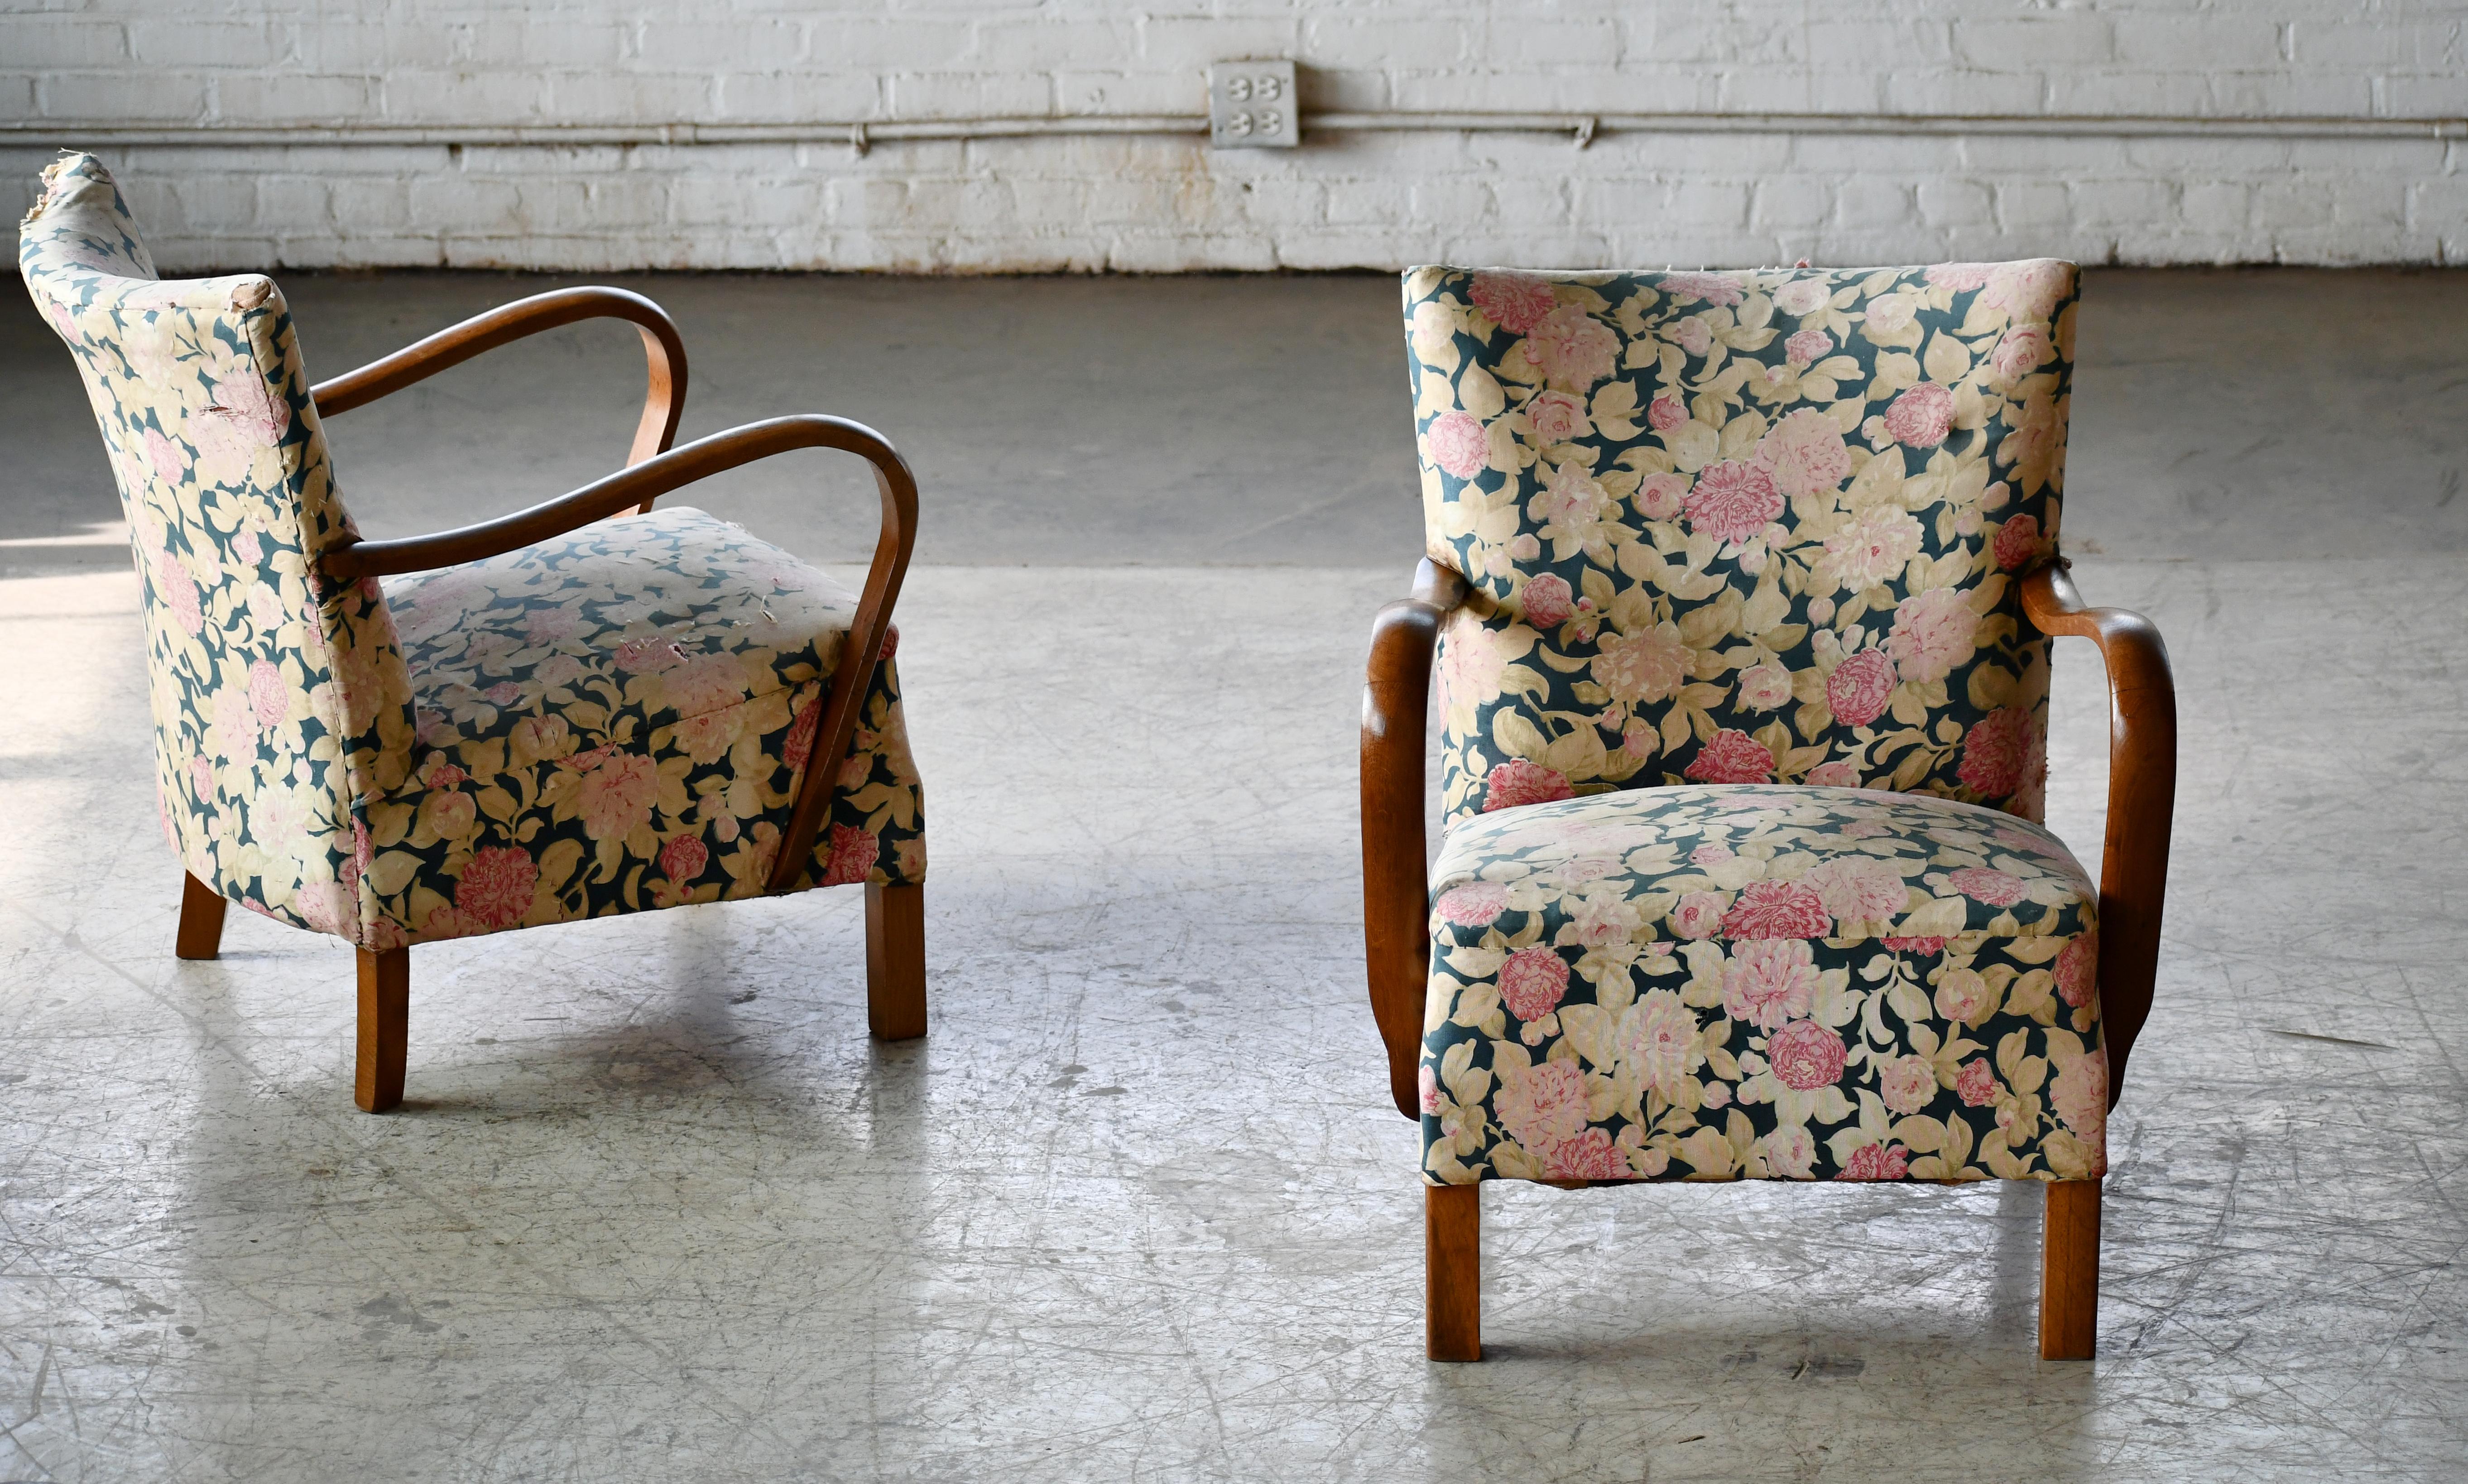 Superbes chaises danoises de la fin de l'Art déco du début des années 1930 avec coussins à ressorts, magnifiques accoudoirs ouverts et pieds sculptés dans un acajou cubain massif au grain et à la patine remarquables. Nous adorons le design simple,